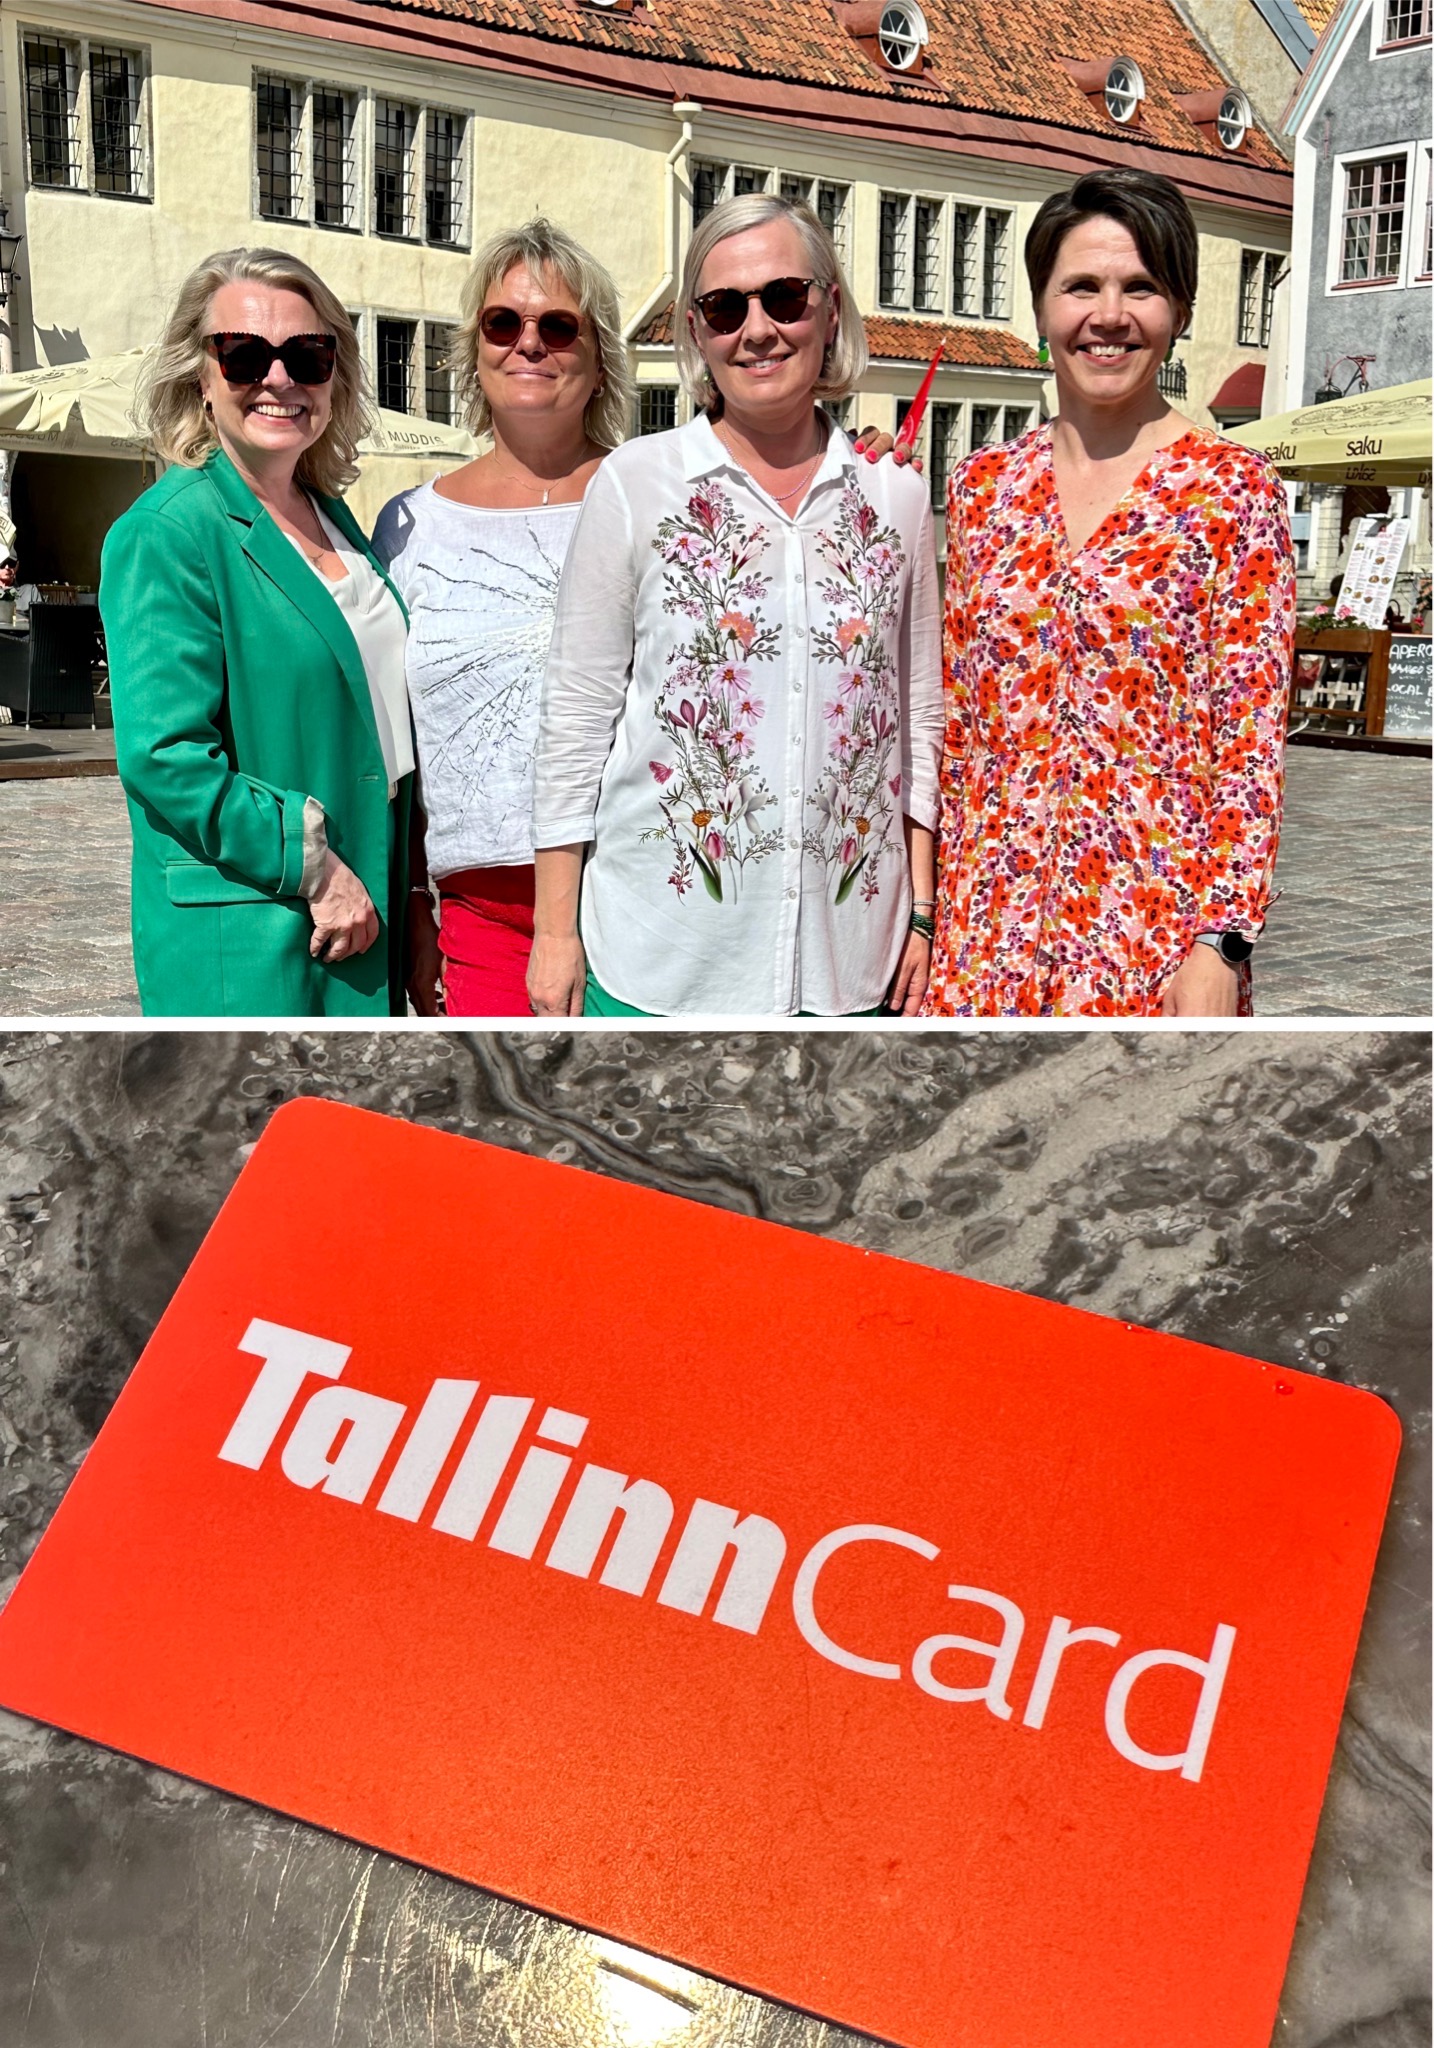 tallinn card